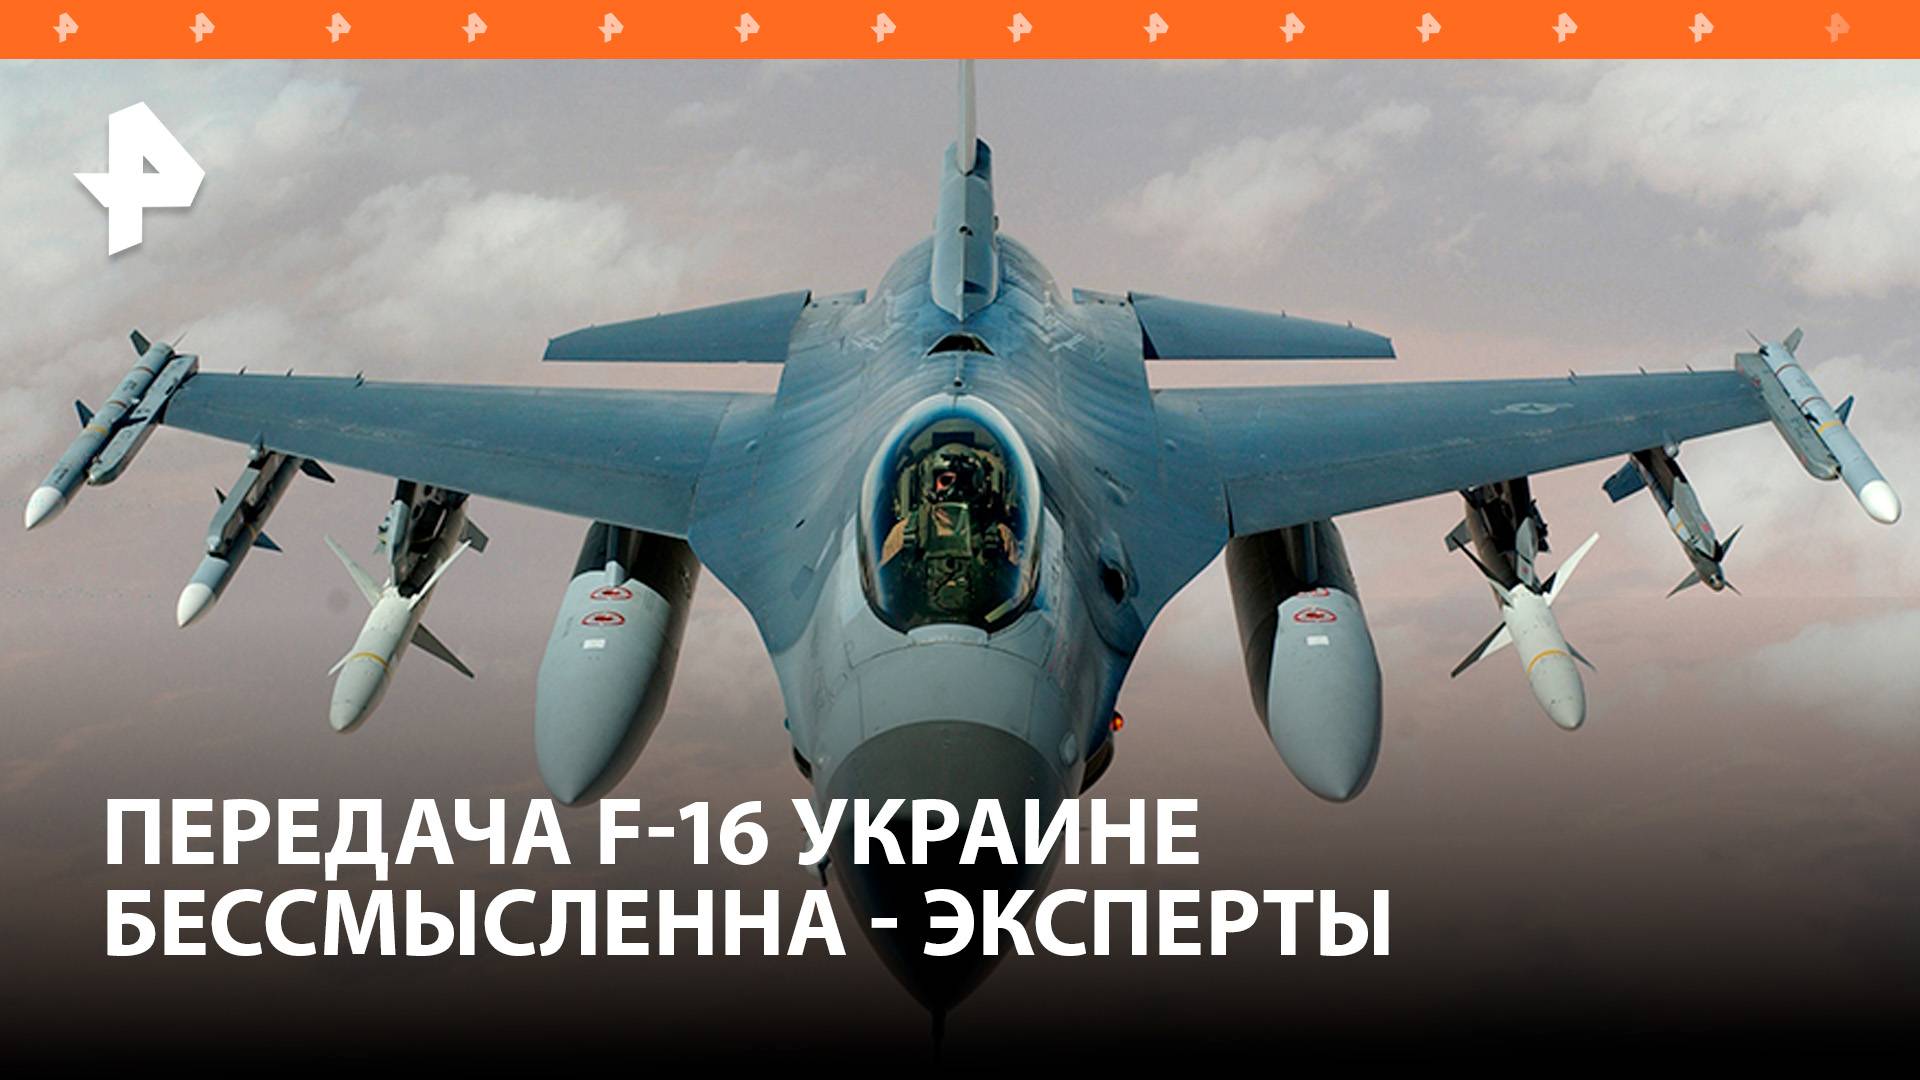 The Telegraph назвал бессмысленной передачу Украине F-16 / РЕН Новости